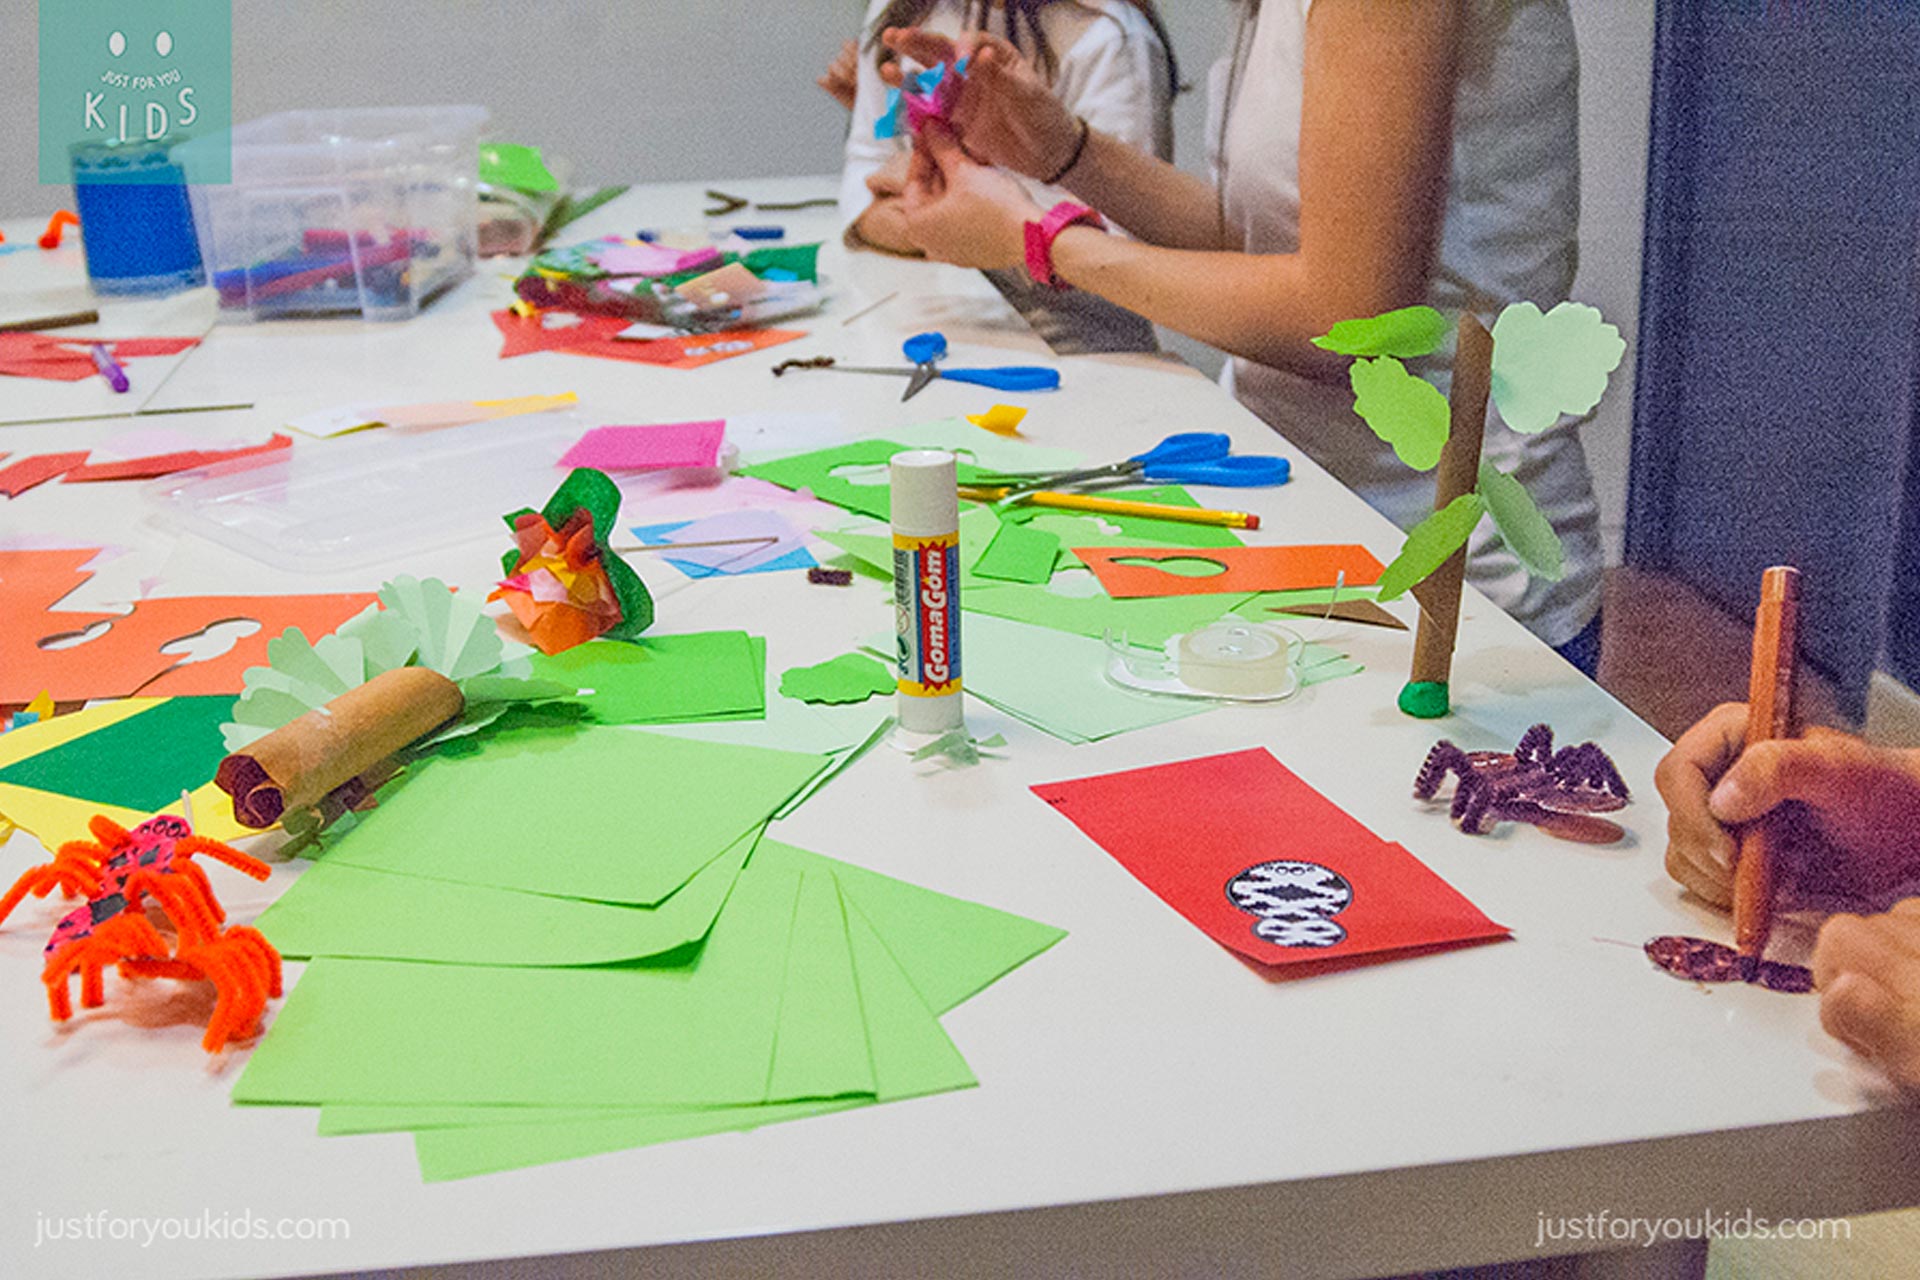 Festes d'aniversari infantils originals i creatives, tallers de manualitats per a nens i nenes.